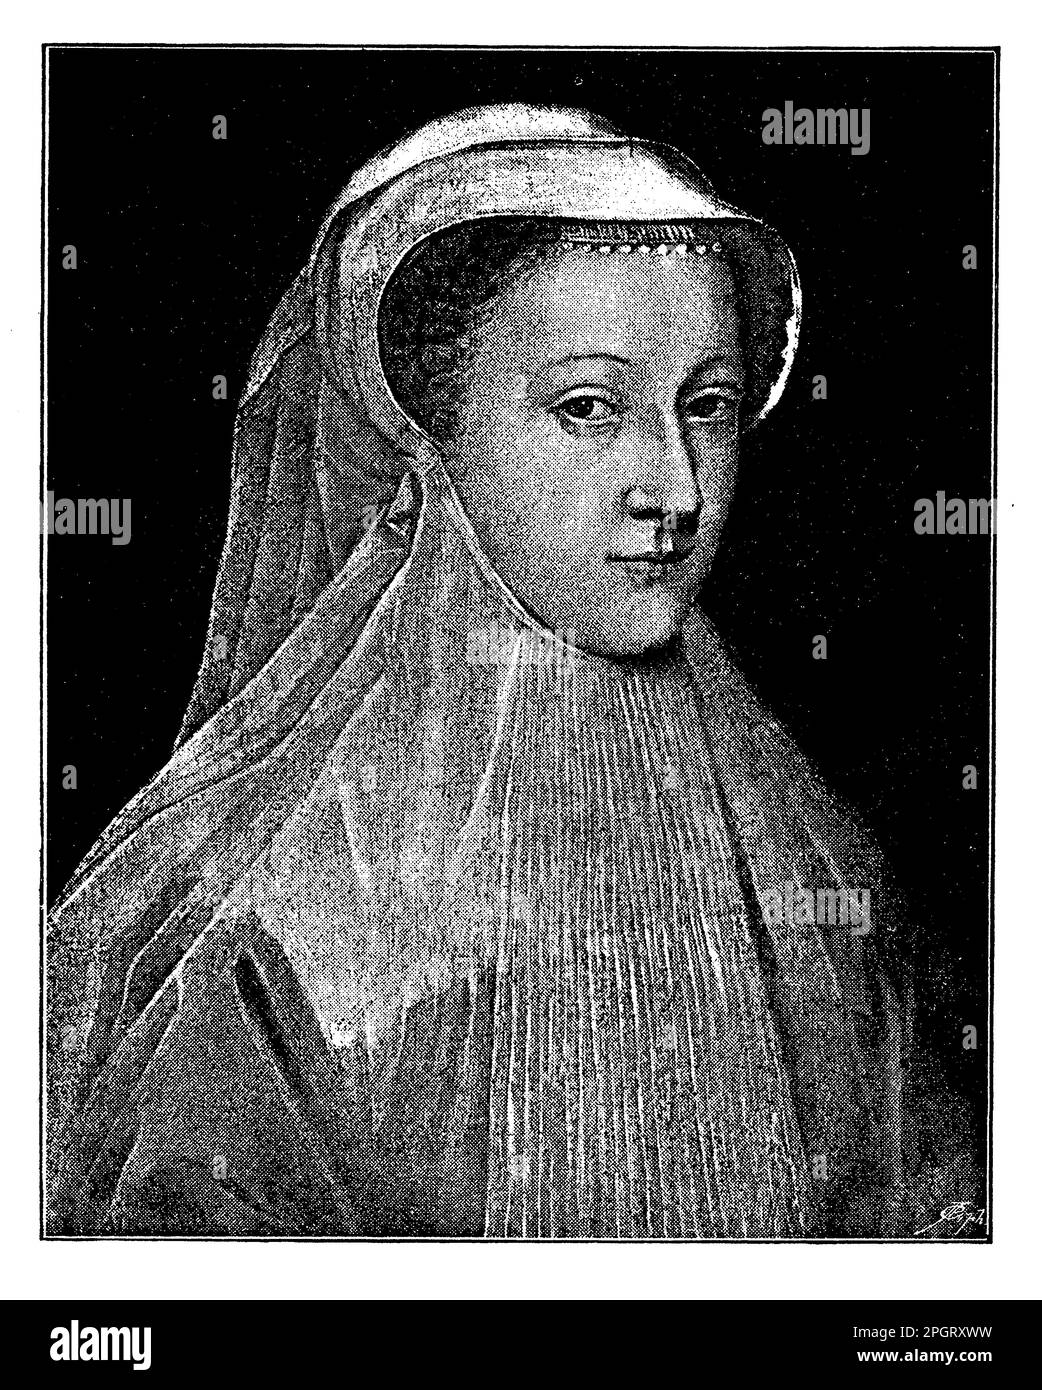 Mary, Königin von Schottland, war eine katholische Monarche, die von 1542 bis 1567 über Schottland herrschte. Ihre Herrschaft war geprägt von politischen Unruhen, einschließlich ihrer erzwungenen Abdankung und Inhaftierung durch ihre Cousine, Königin Elizabeth I. von England. Mary wurde 1587 hingerichtet, weil sie angeblich an einem Komplott beteiligt war, um Elizabeth zu ermorden Stockfoto